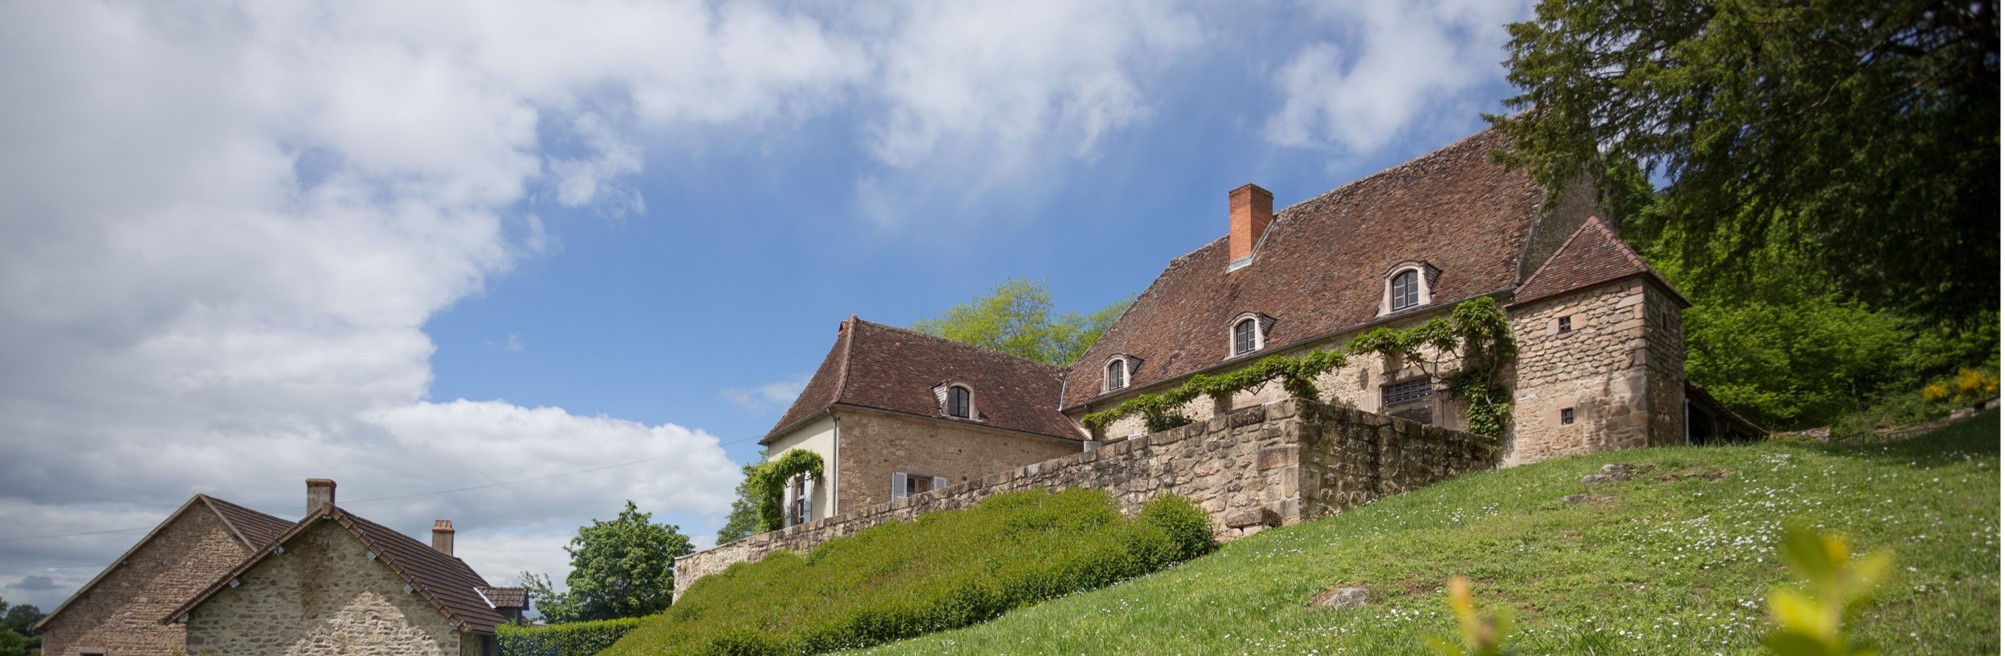 Domaine de Thil Mariage en Bourgogne